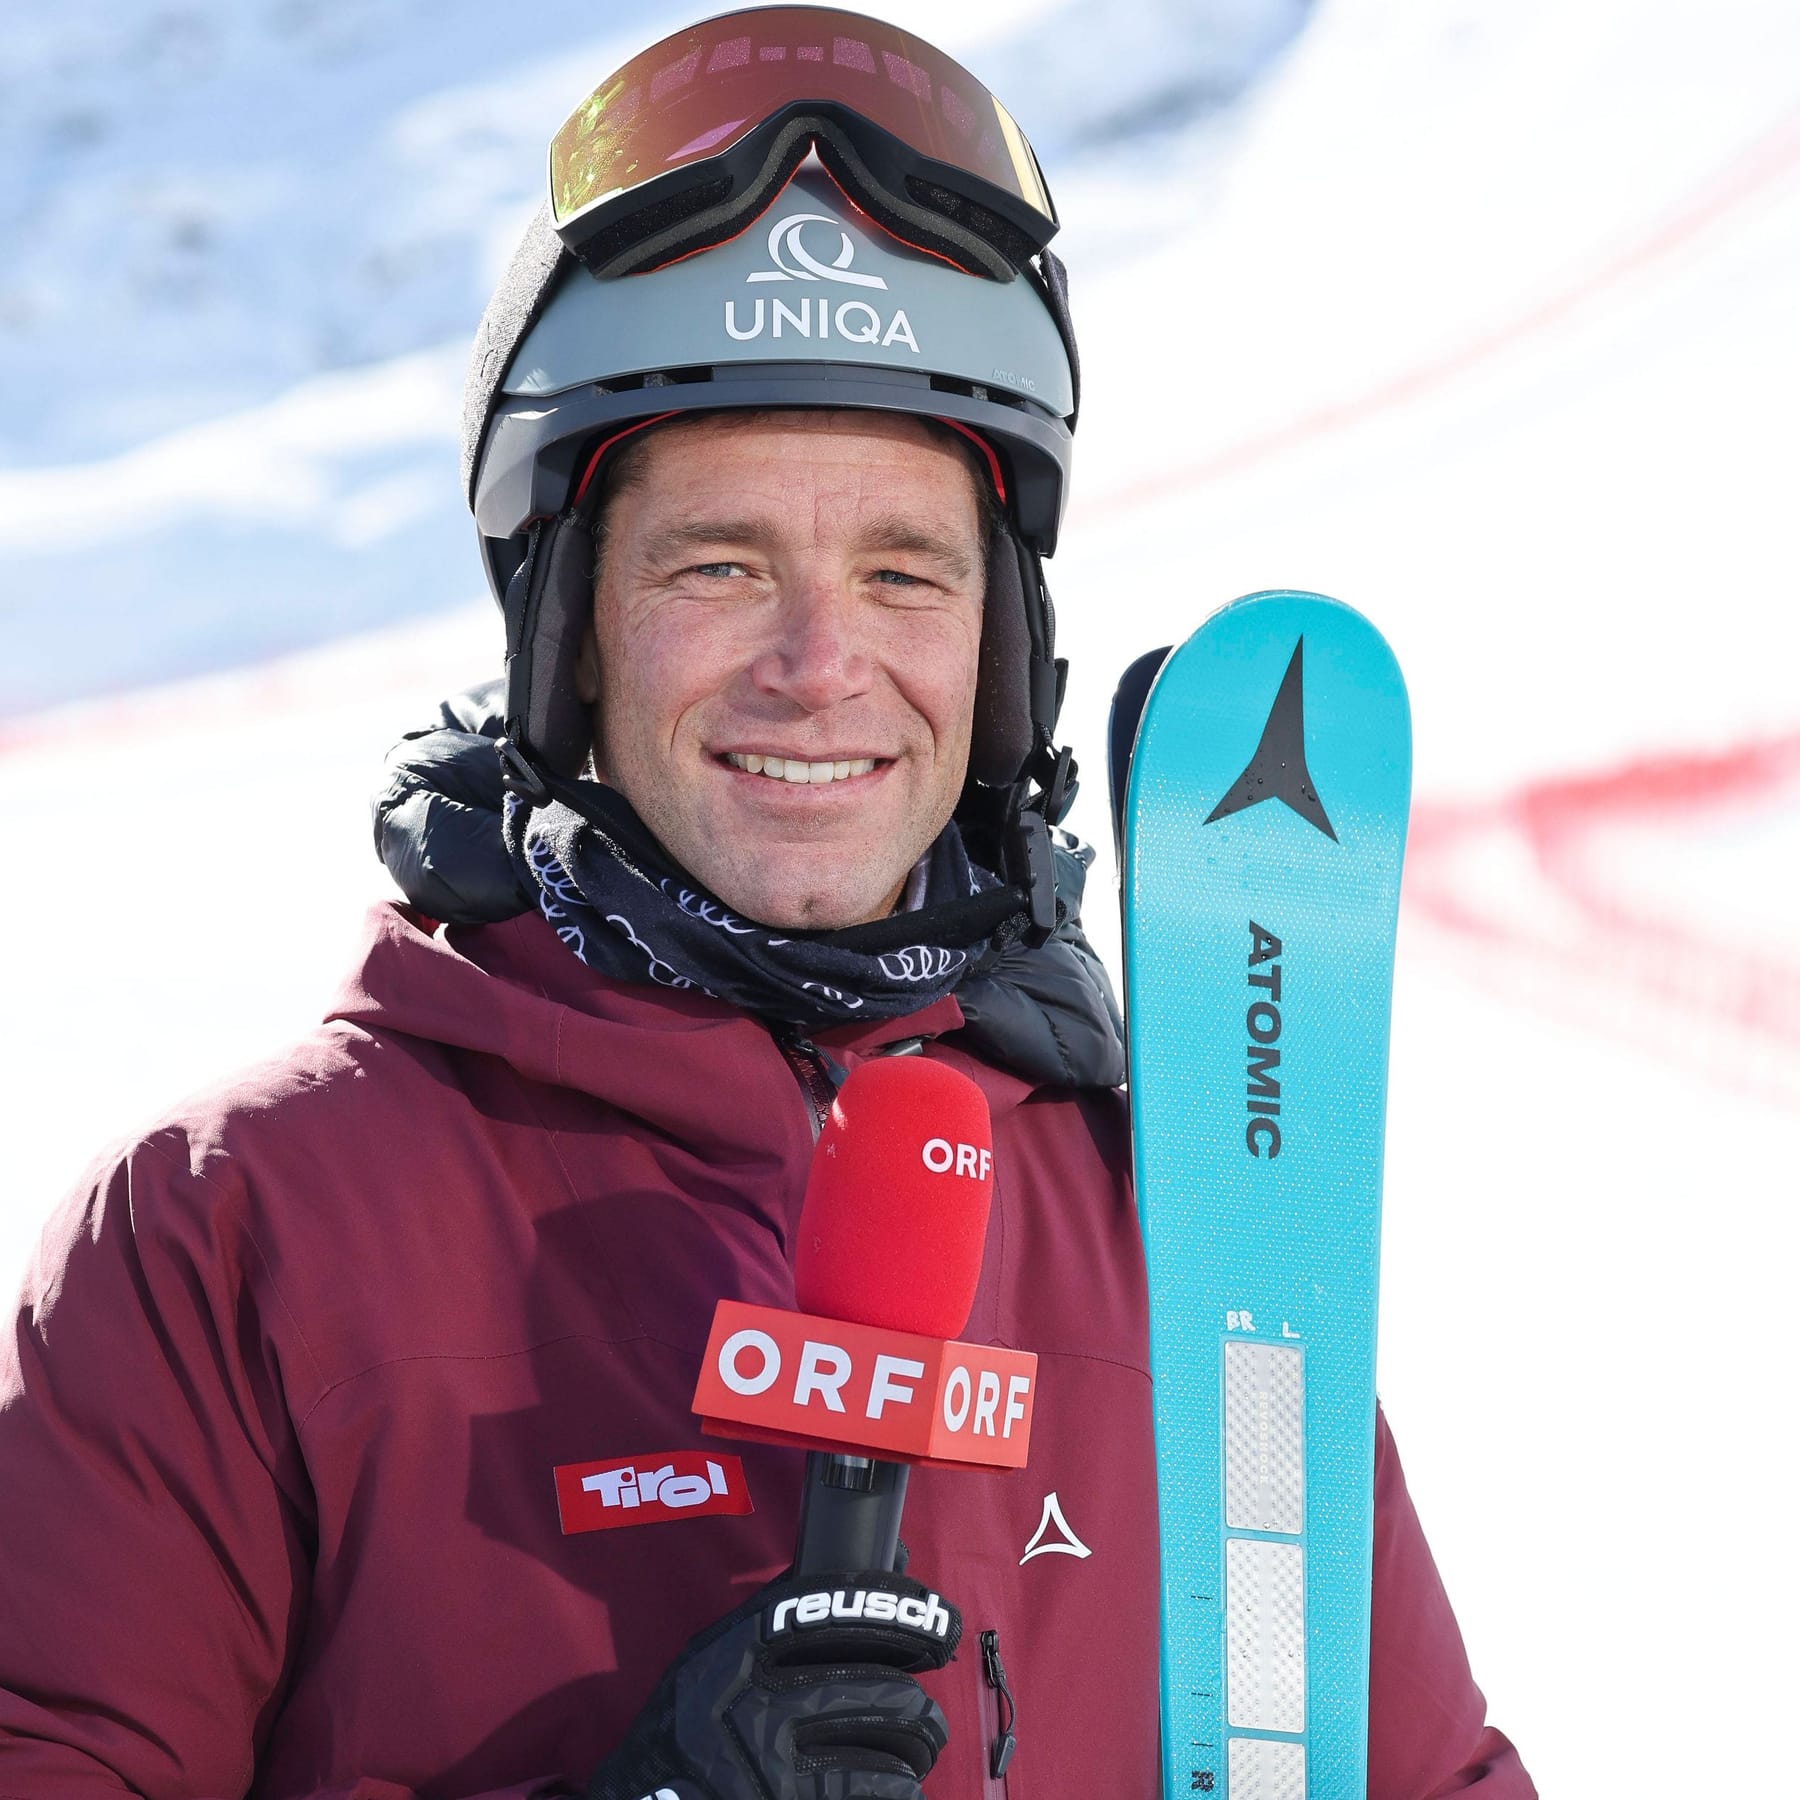 Ski alpin Maulkorb wegen Kritik an Klima-Aktivisten? ORF äußert sich